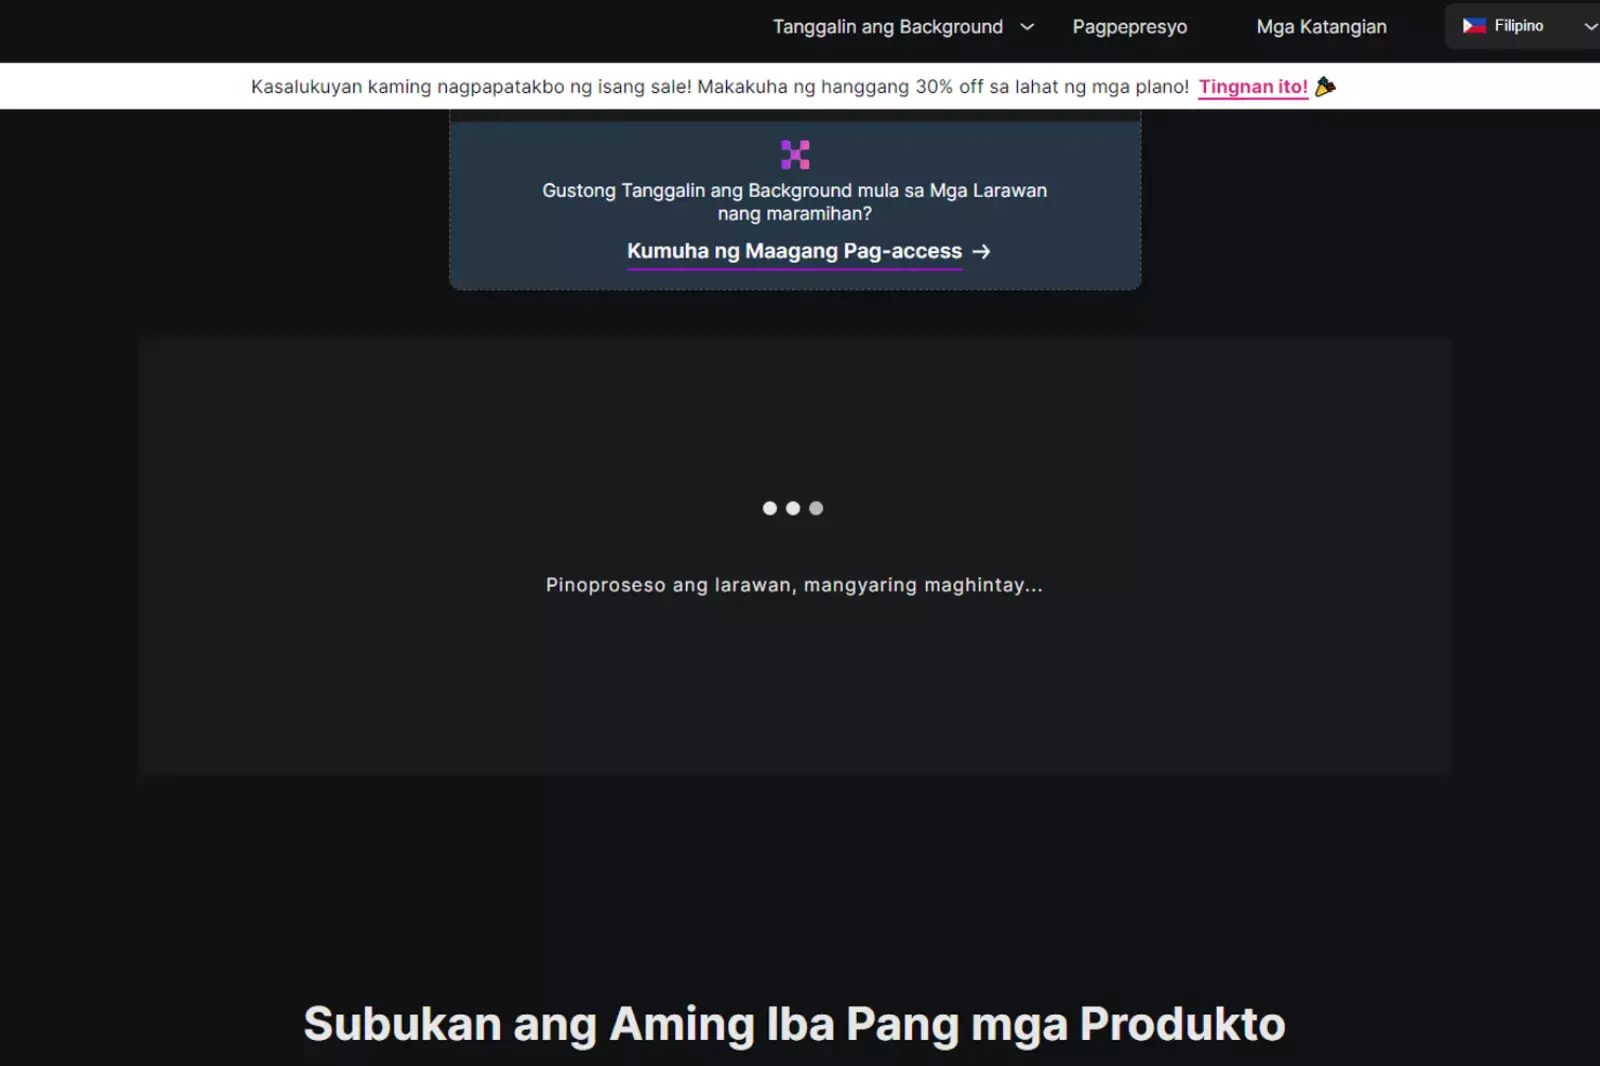 Lilitaw ang mensahe sa screen na nagsasabing "Pinoproseso ang larawan, mangyaring maghintay..."